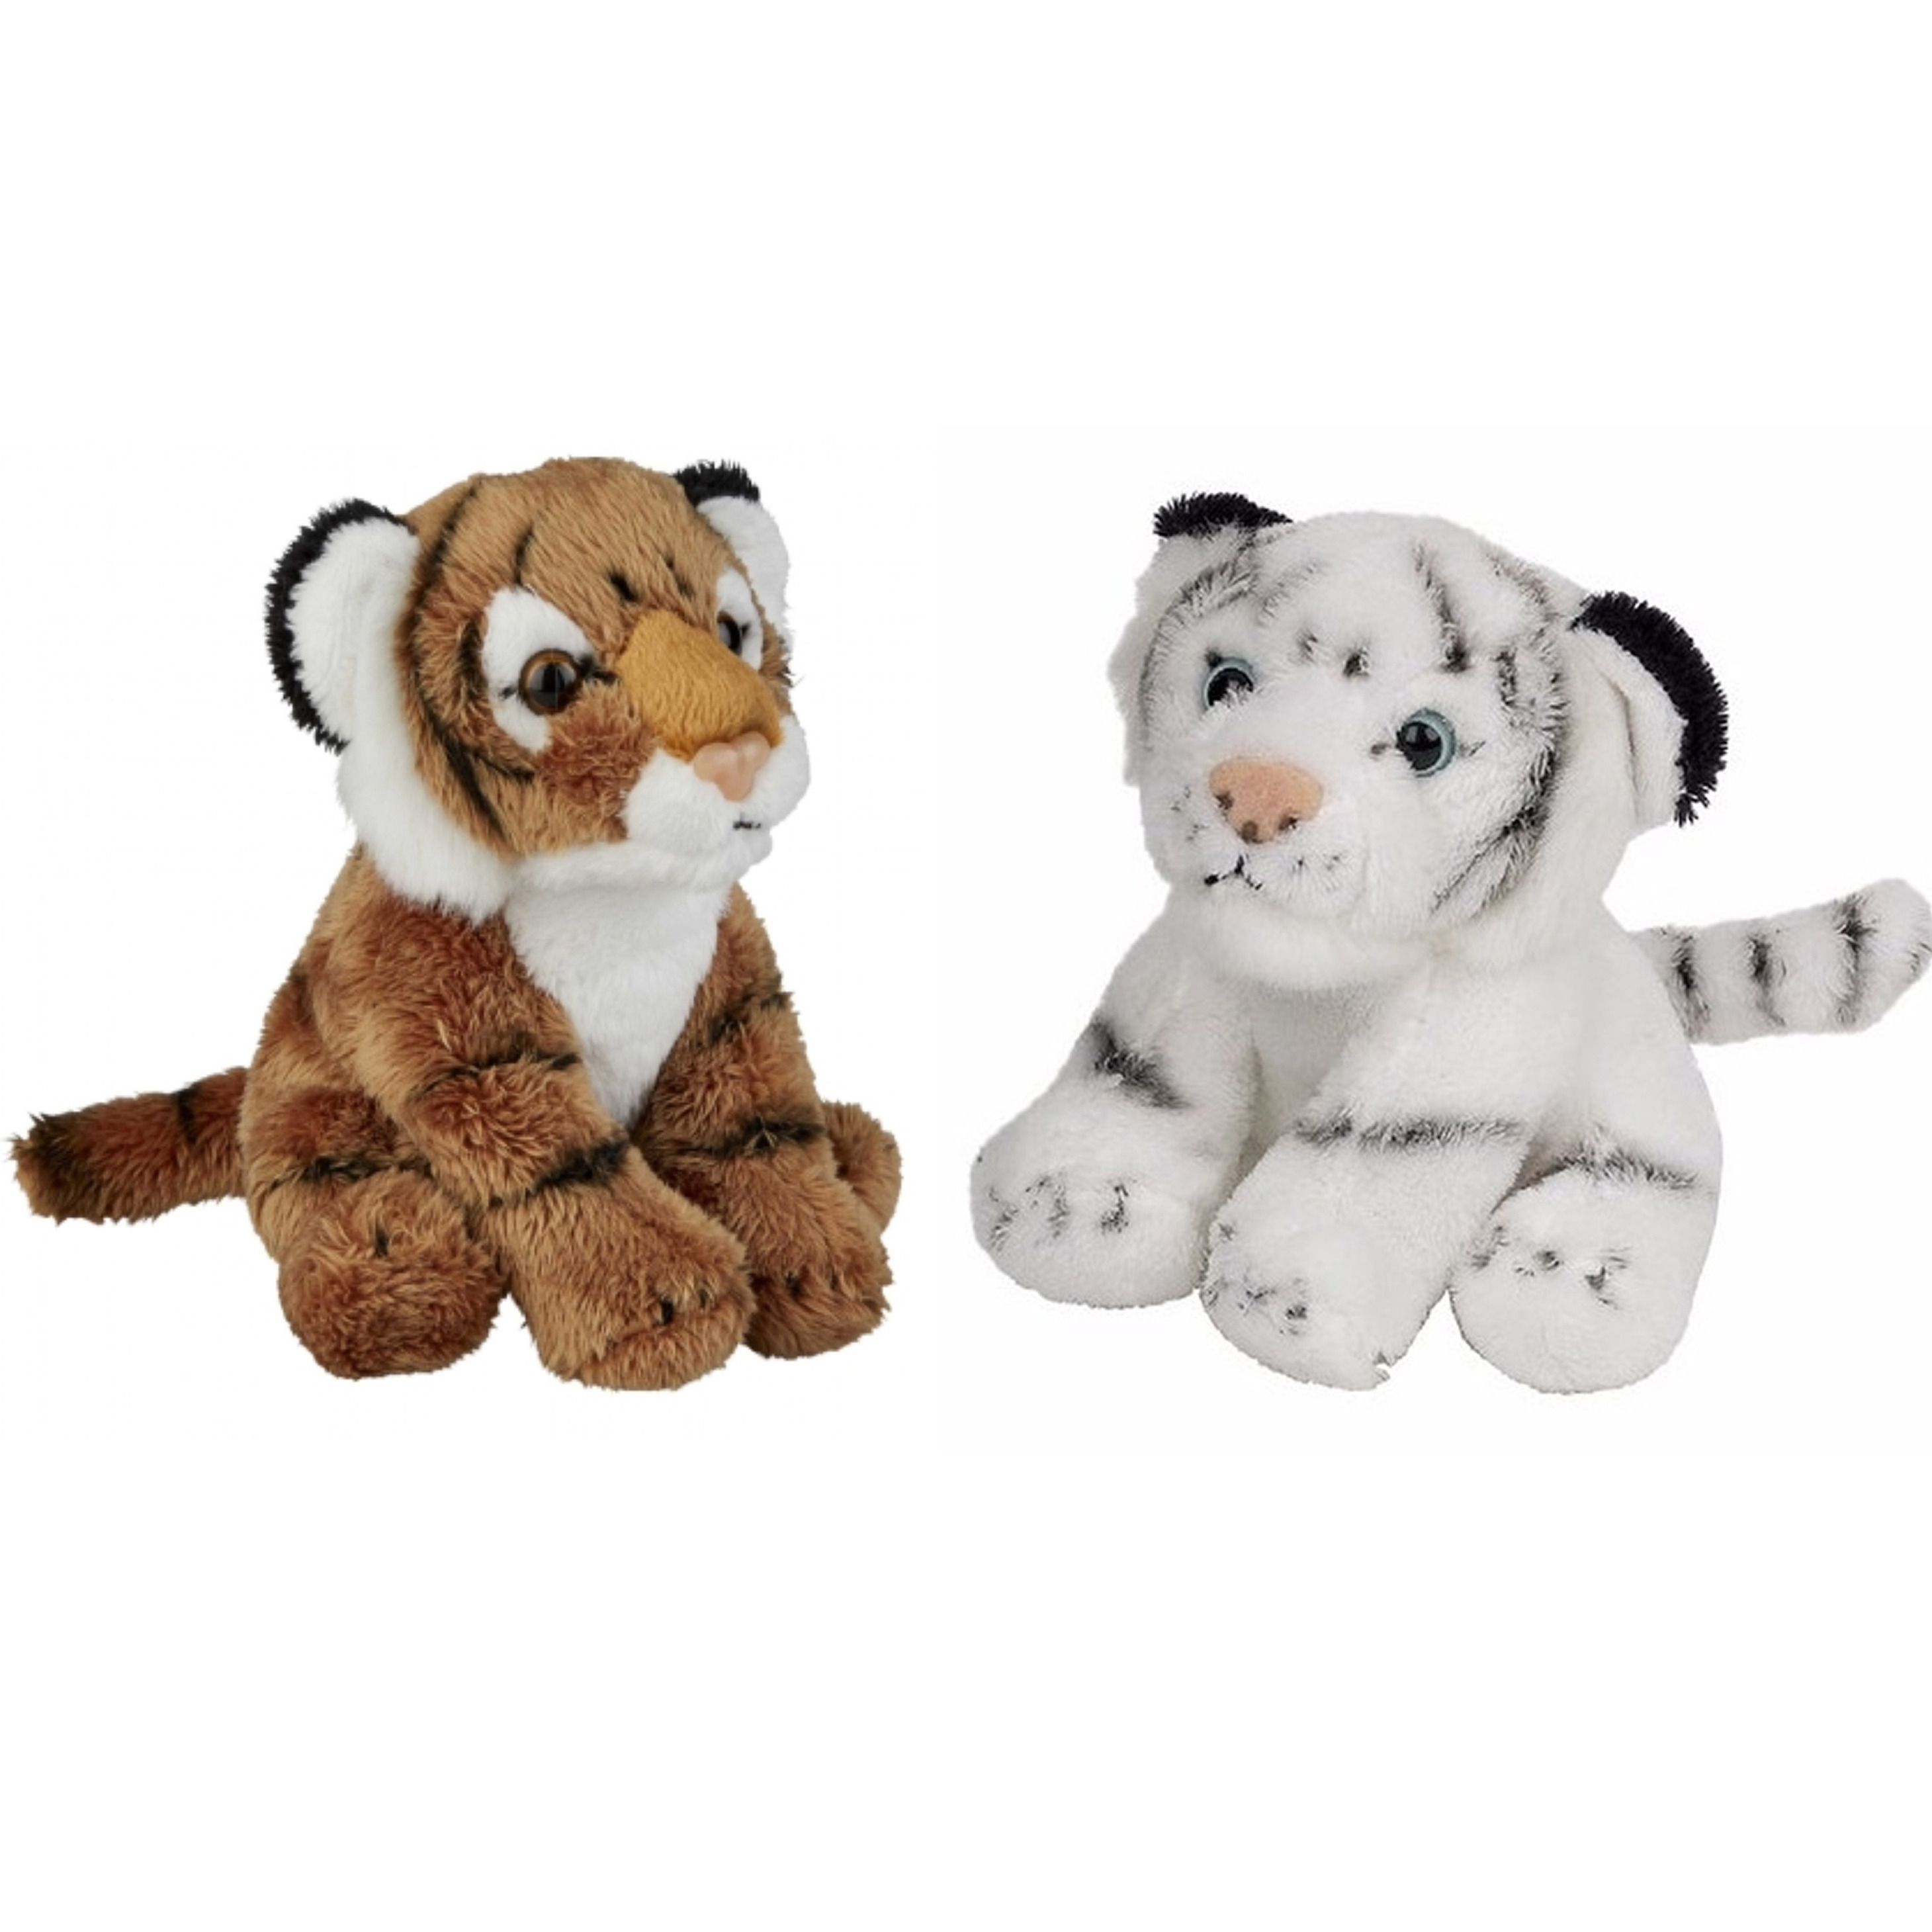 Safari dieren serie pluche knuffels 2x stuks Witte en Bruine Tijgers van 15 cm